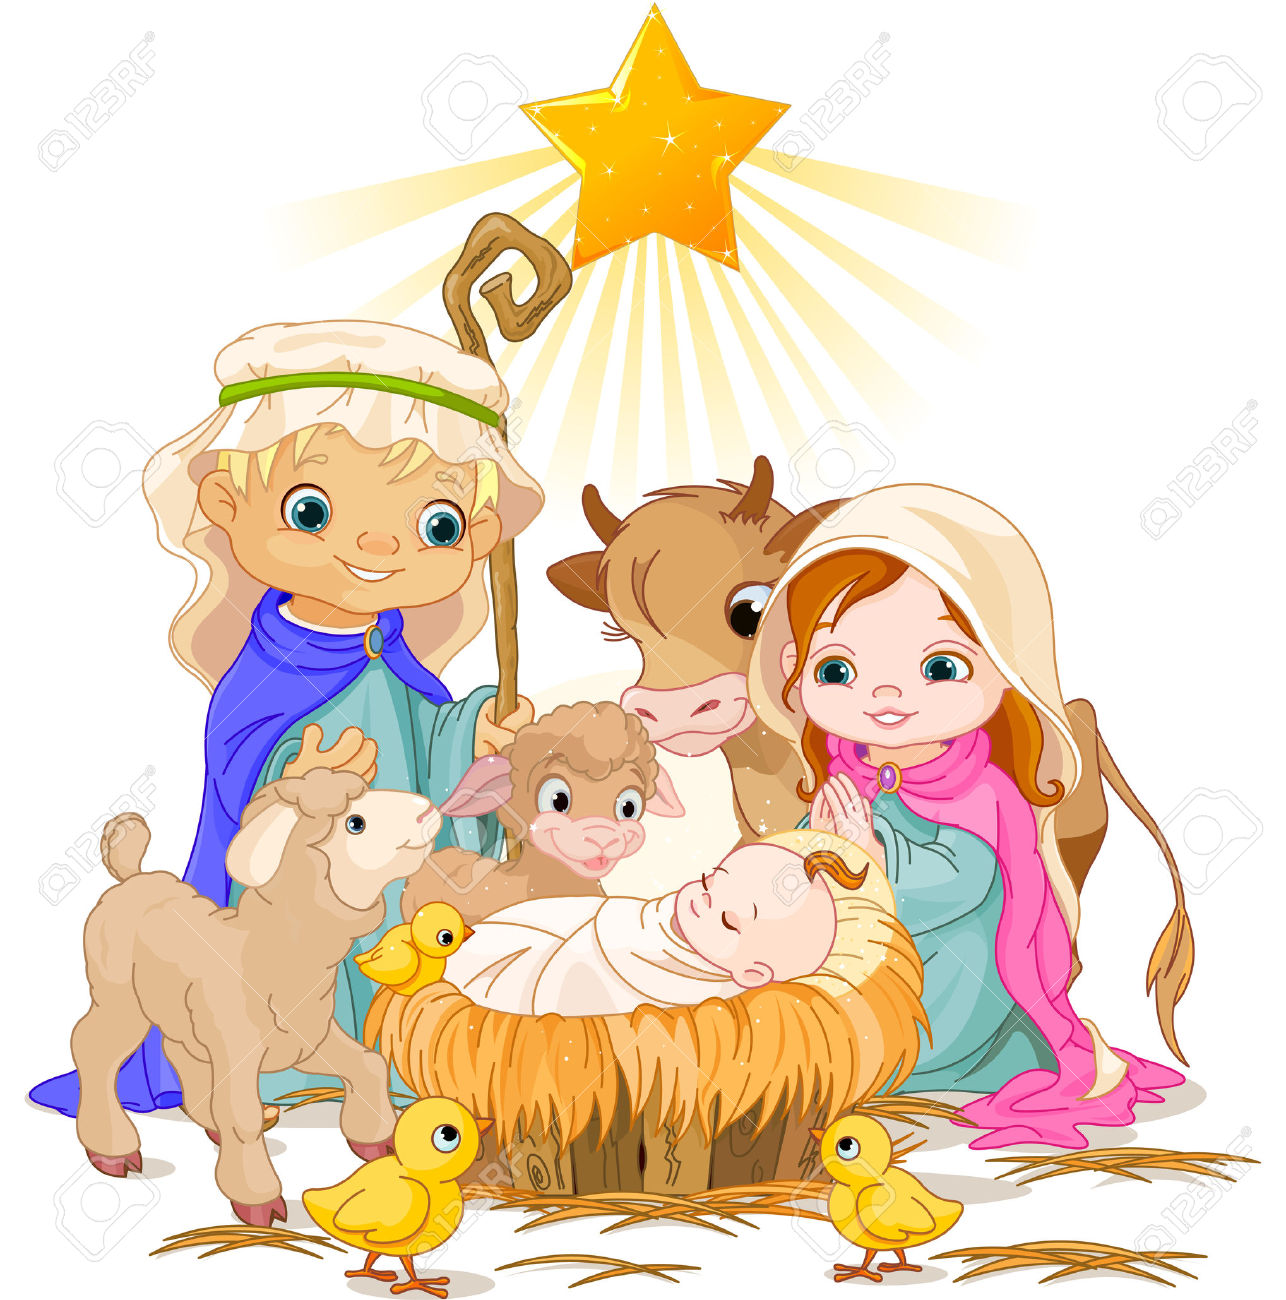 Cartoon Nativity Scene - Animated Nativity Scene Clipart 20 Free ...